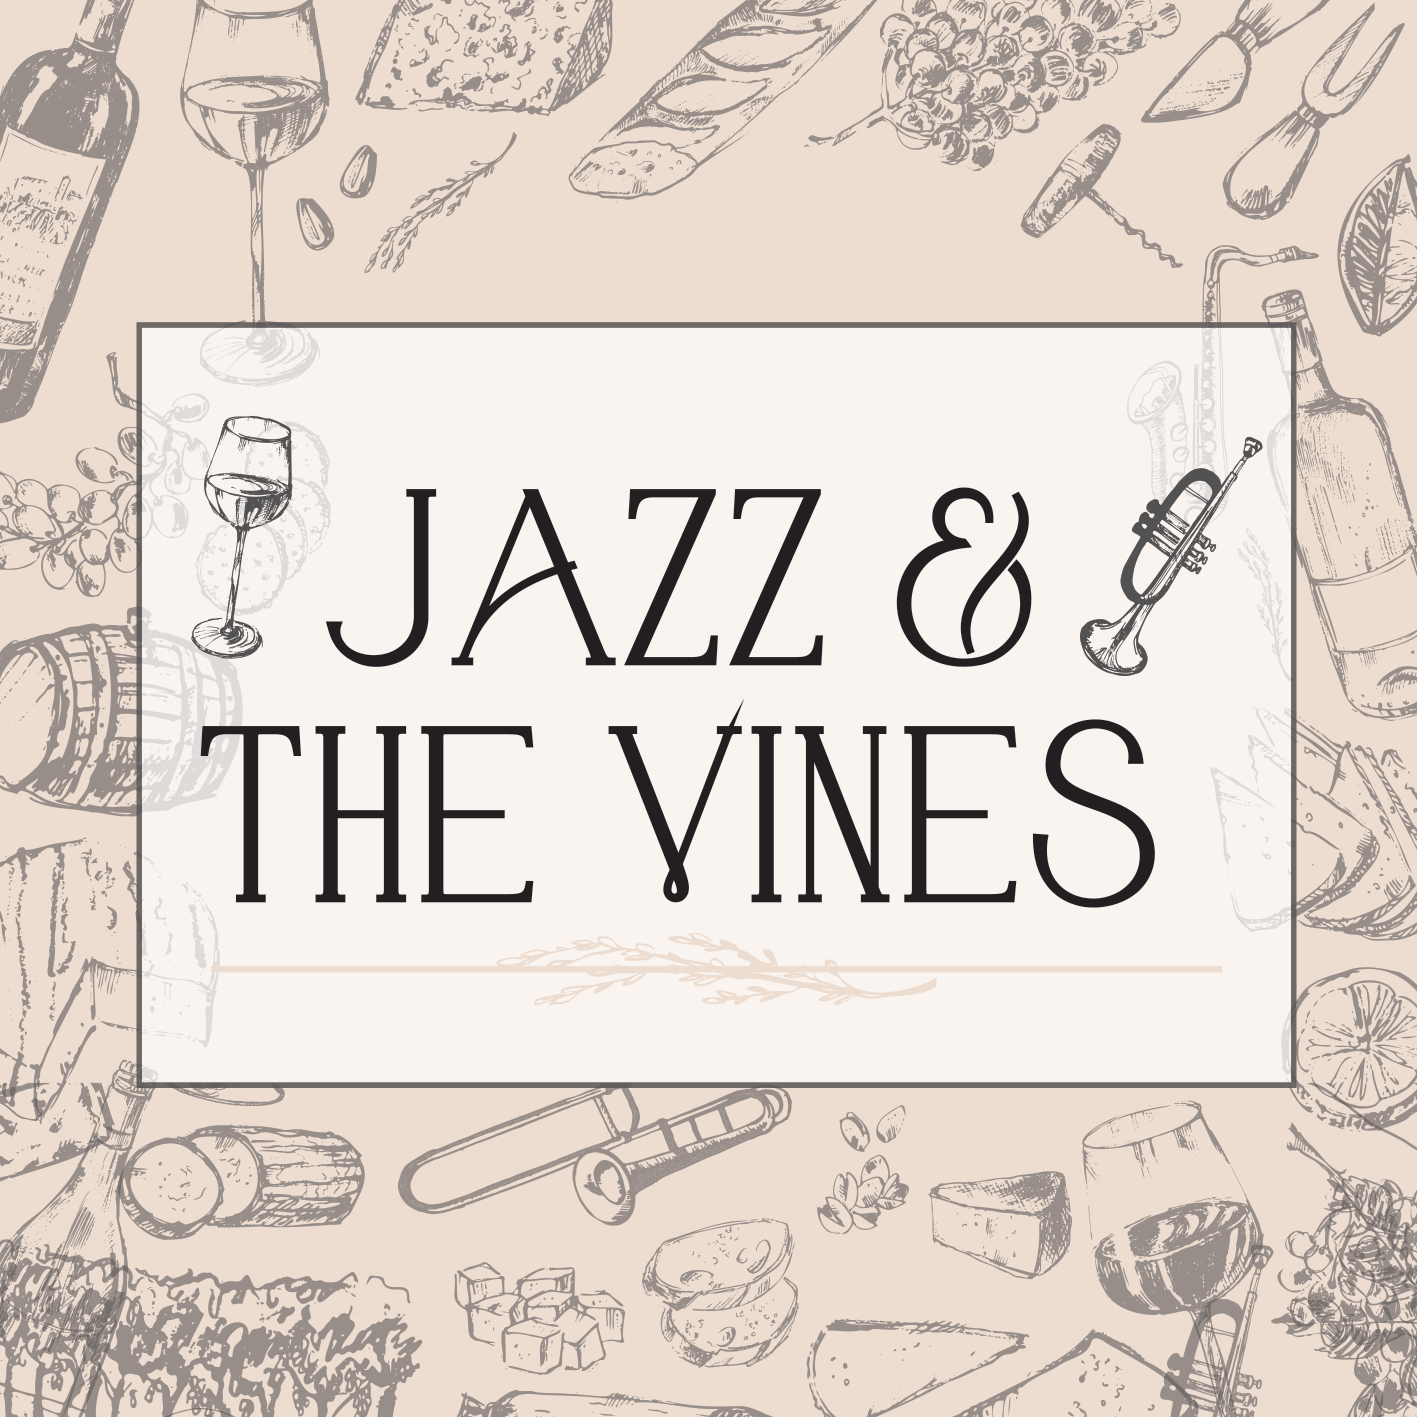 Jazz & the Vines Aug